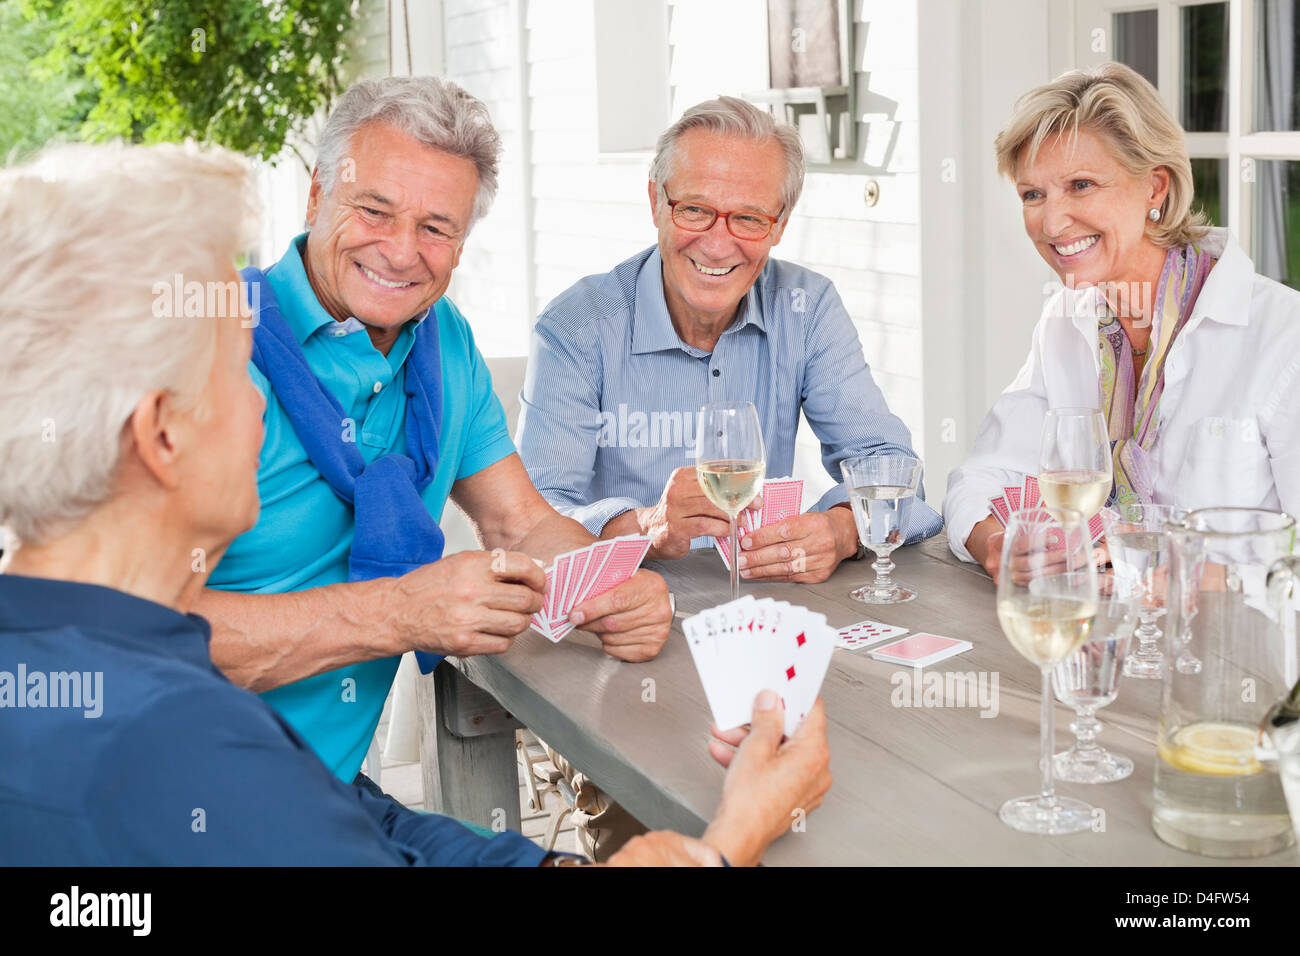 Les amis jouer aux cartes à la table Banque D'Images